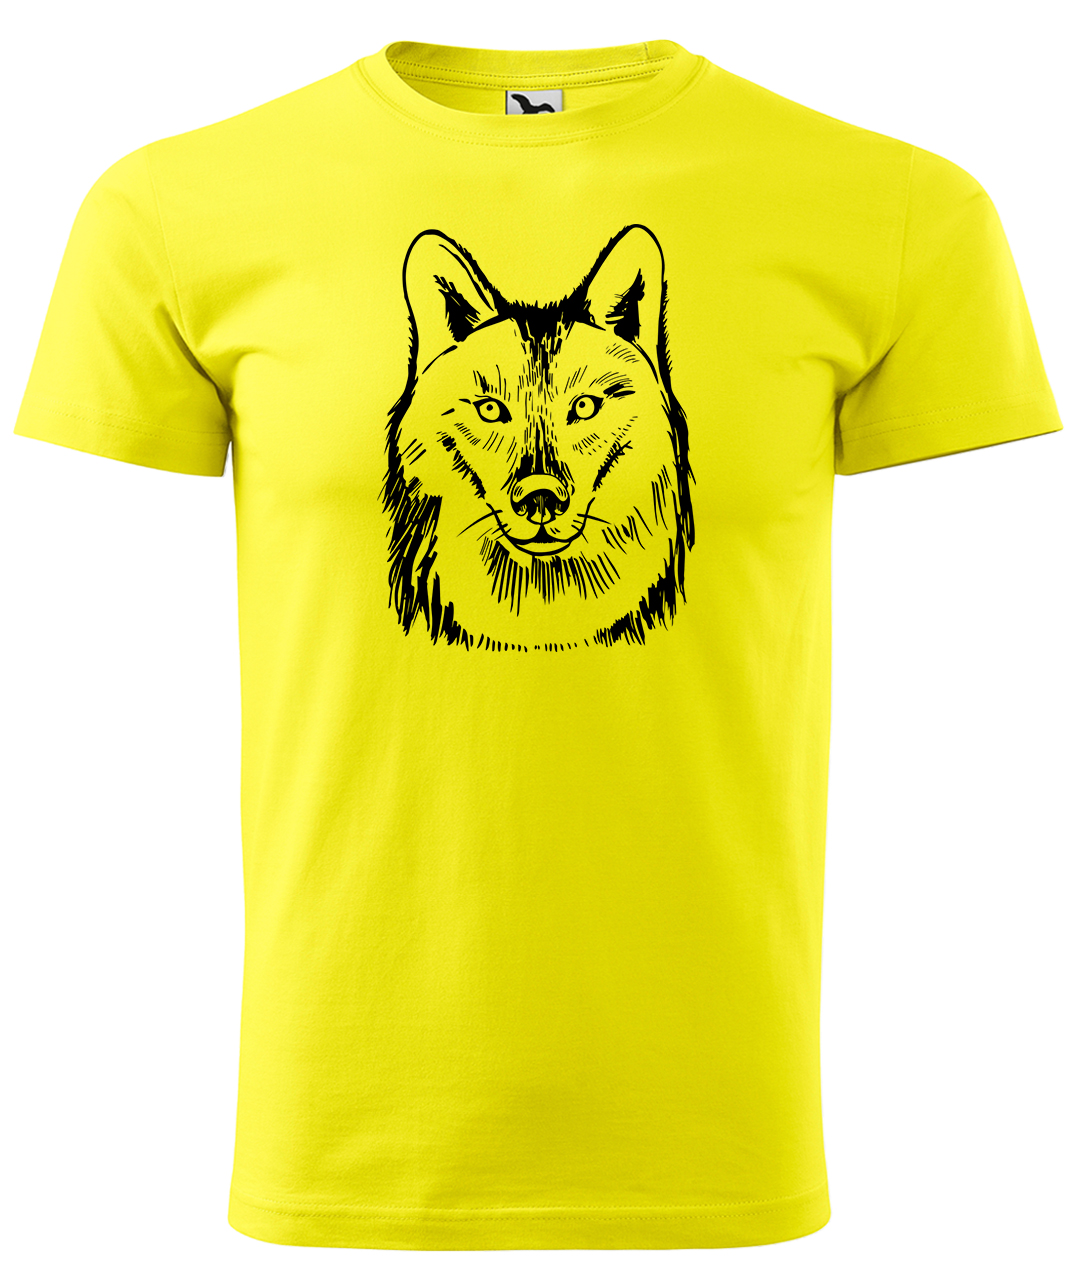 Dětské tričko s vlkem - Kresba vlka Velikost: 4 roky / 110 cm, Barva: Žlutá (04), Délka rukávu: Krátký rukáv